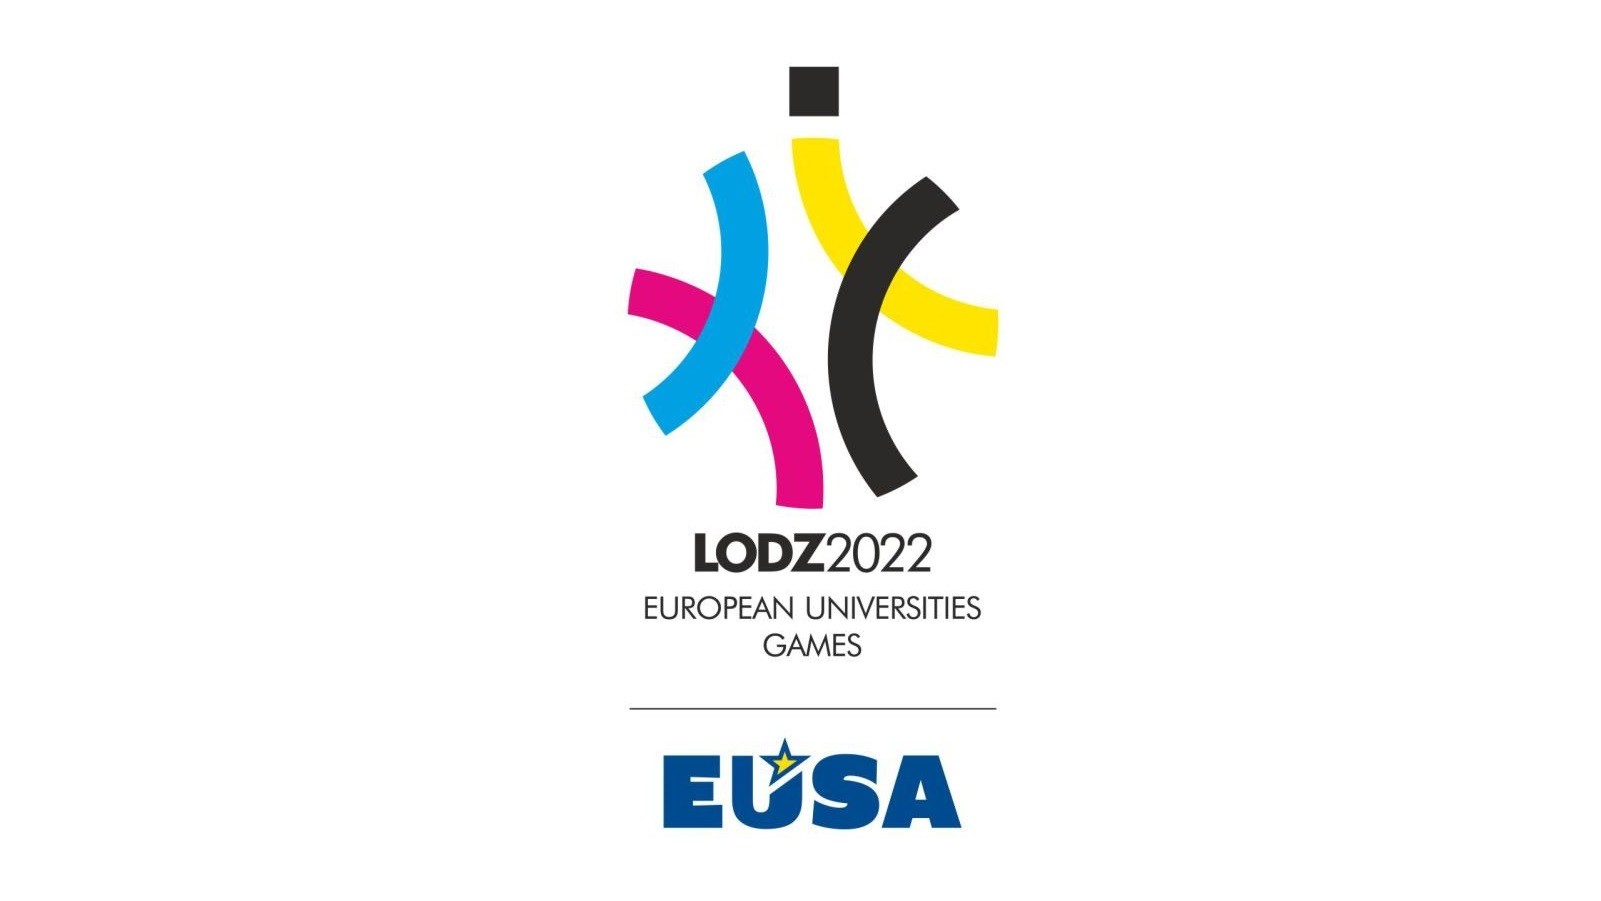 EUSA logo